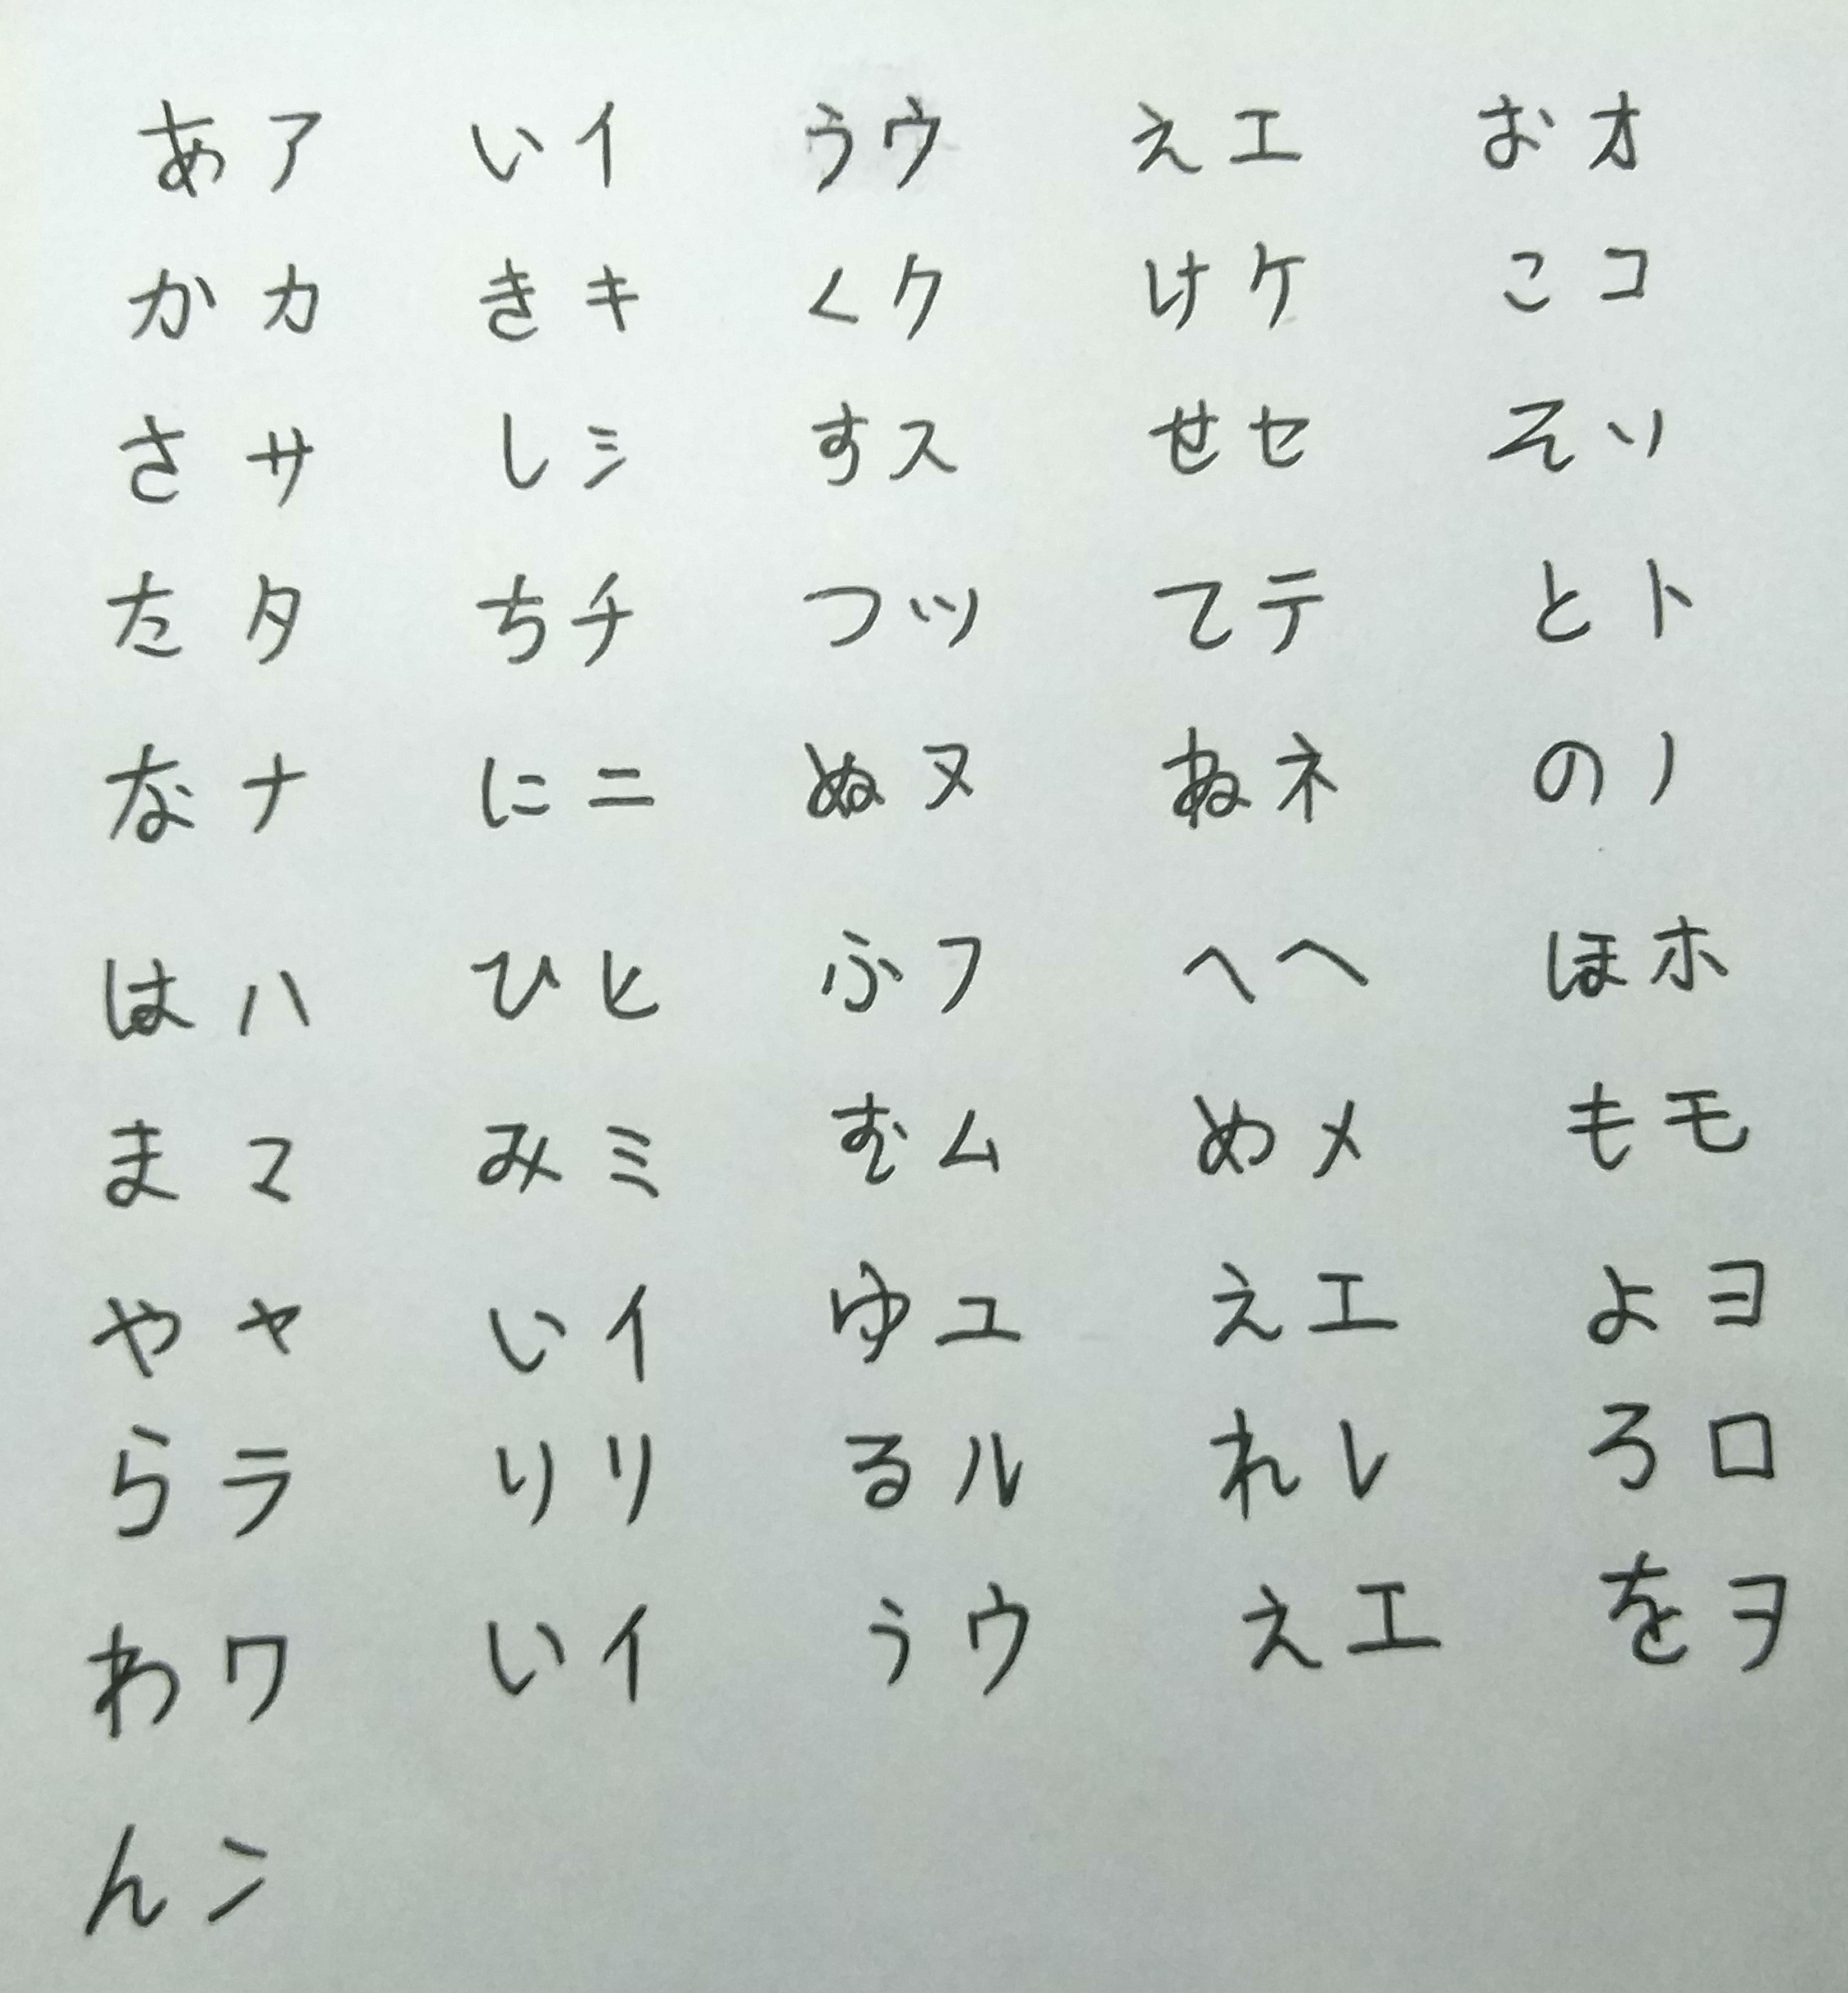 日语手写五十音图大赛